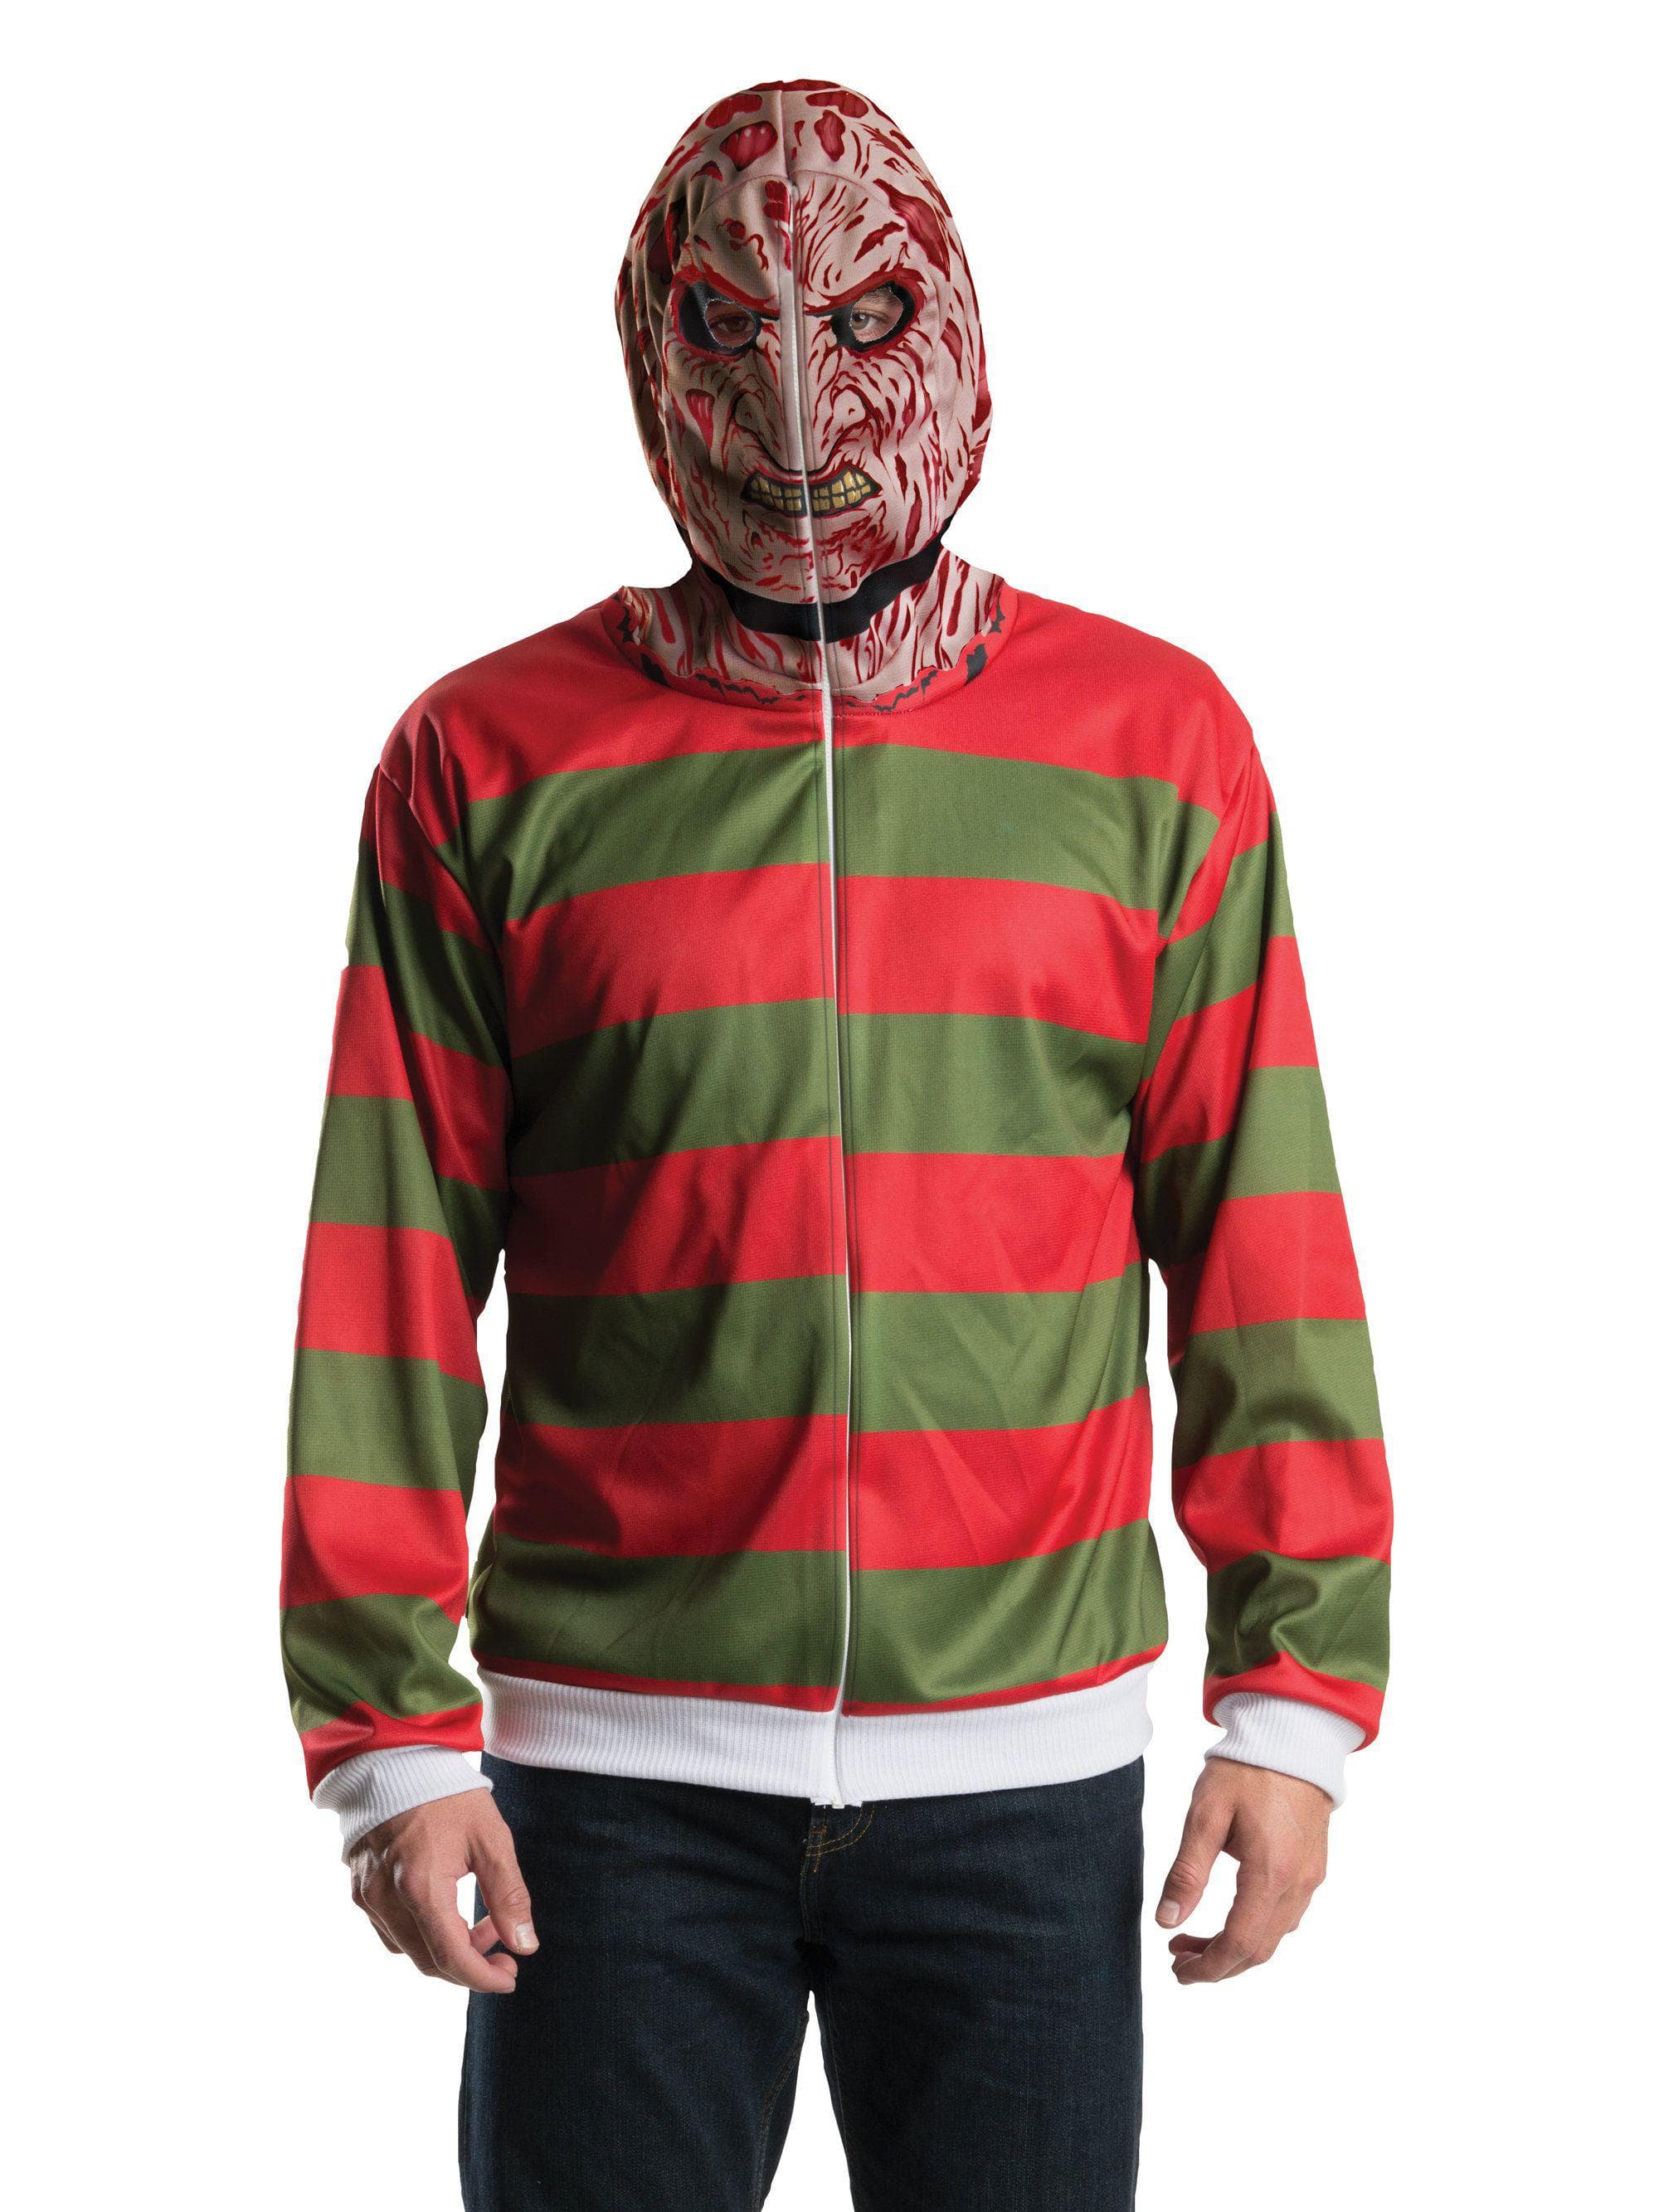 Adult A Nightmare on Elm Street Freddy Krueger Hoodie - costumes.com